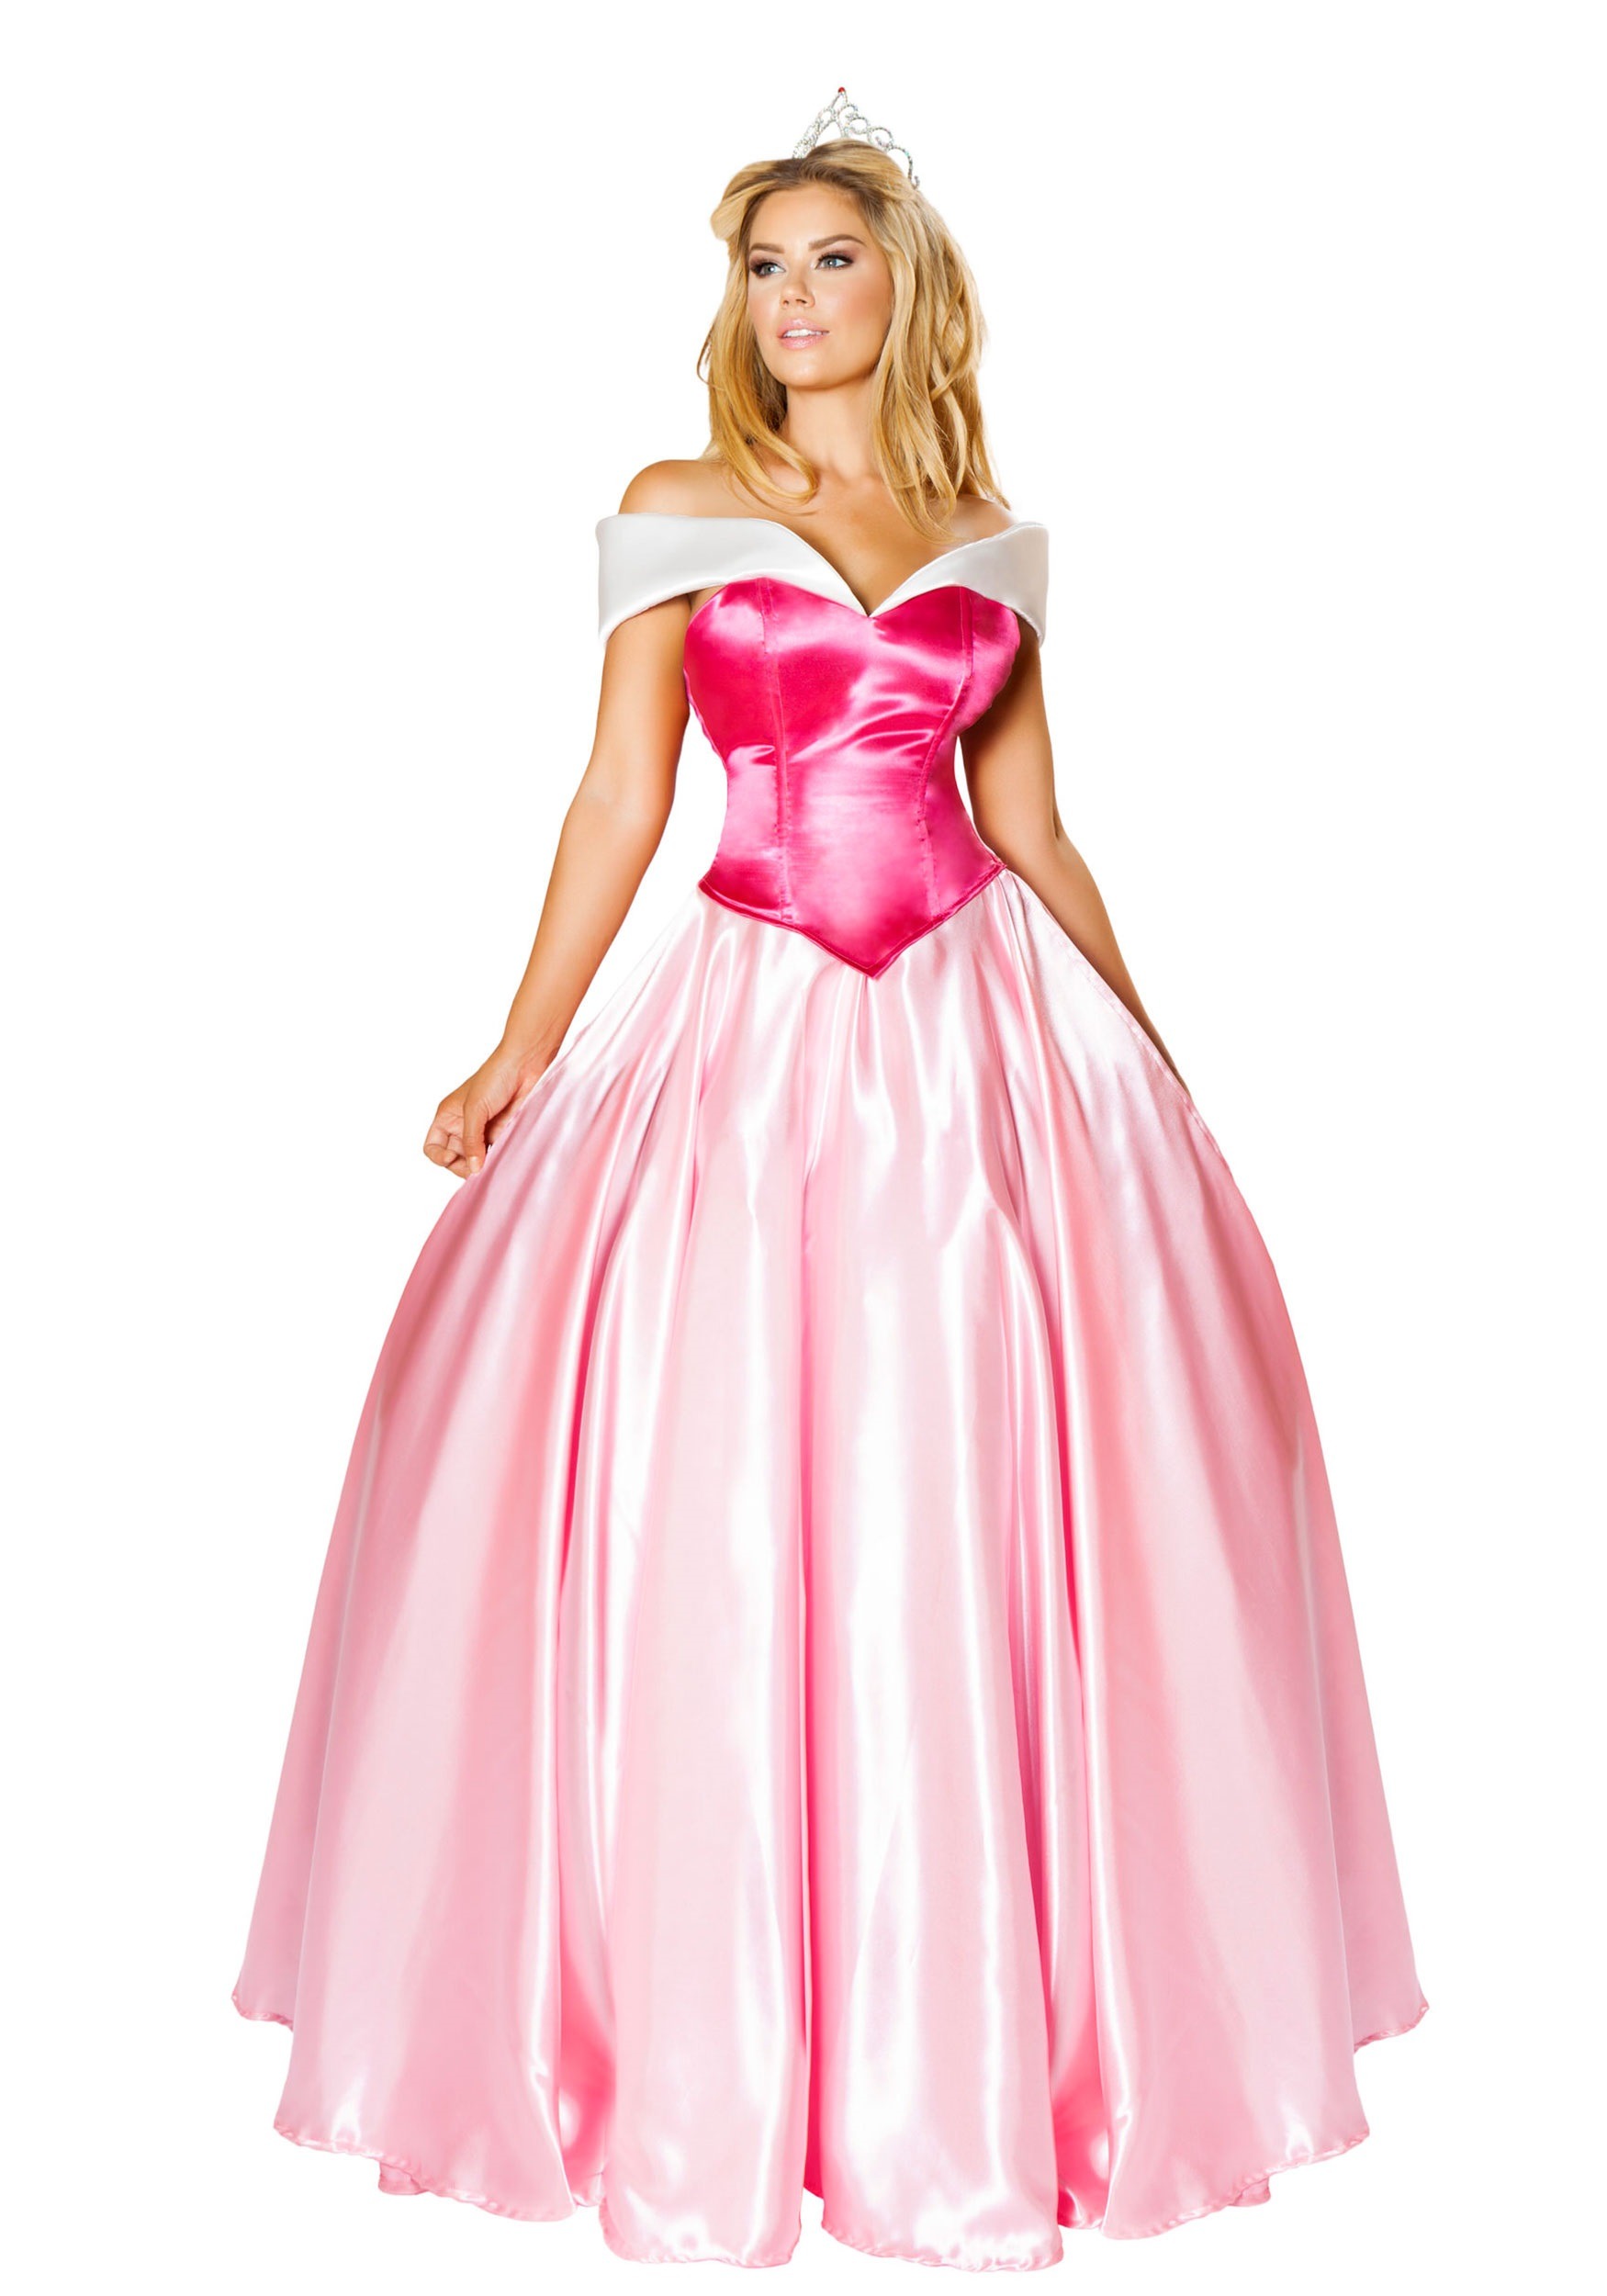 Womens Beautiful Princess Costume Dress